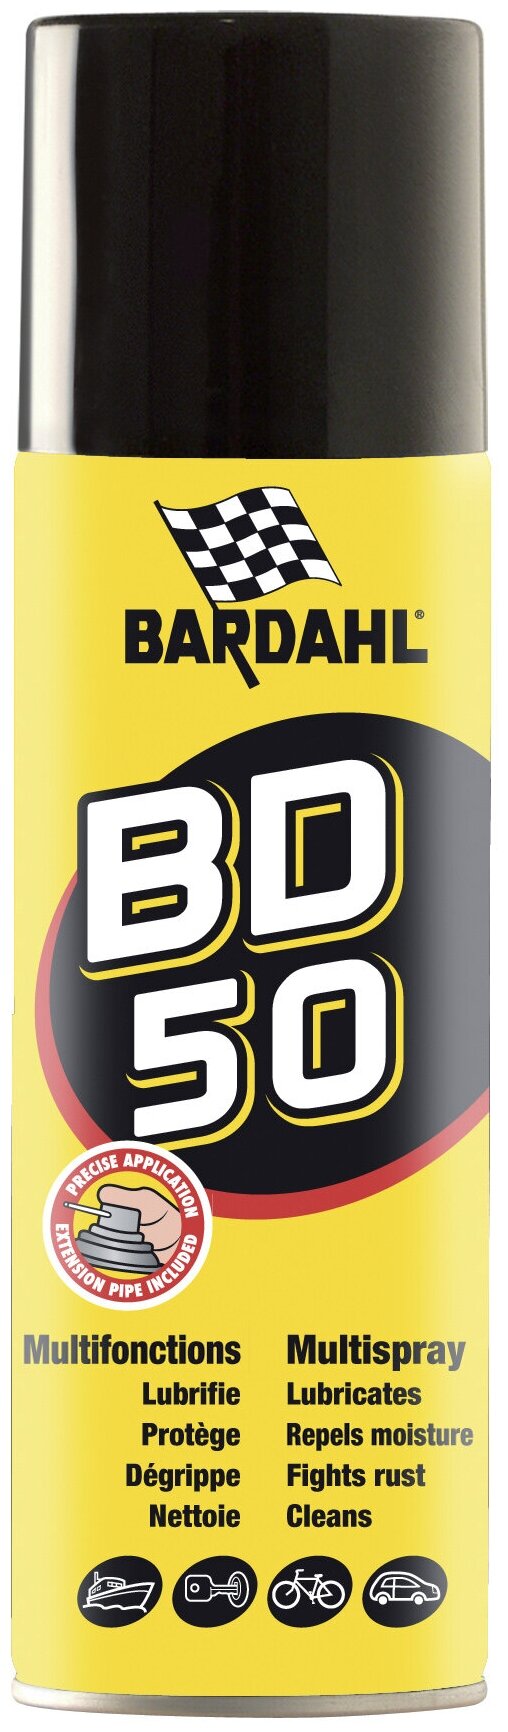 Bd50-Multispray многофункциональный спрей-смазка 500ml Bardahl 3221